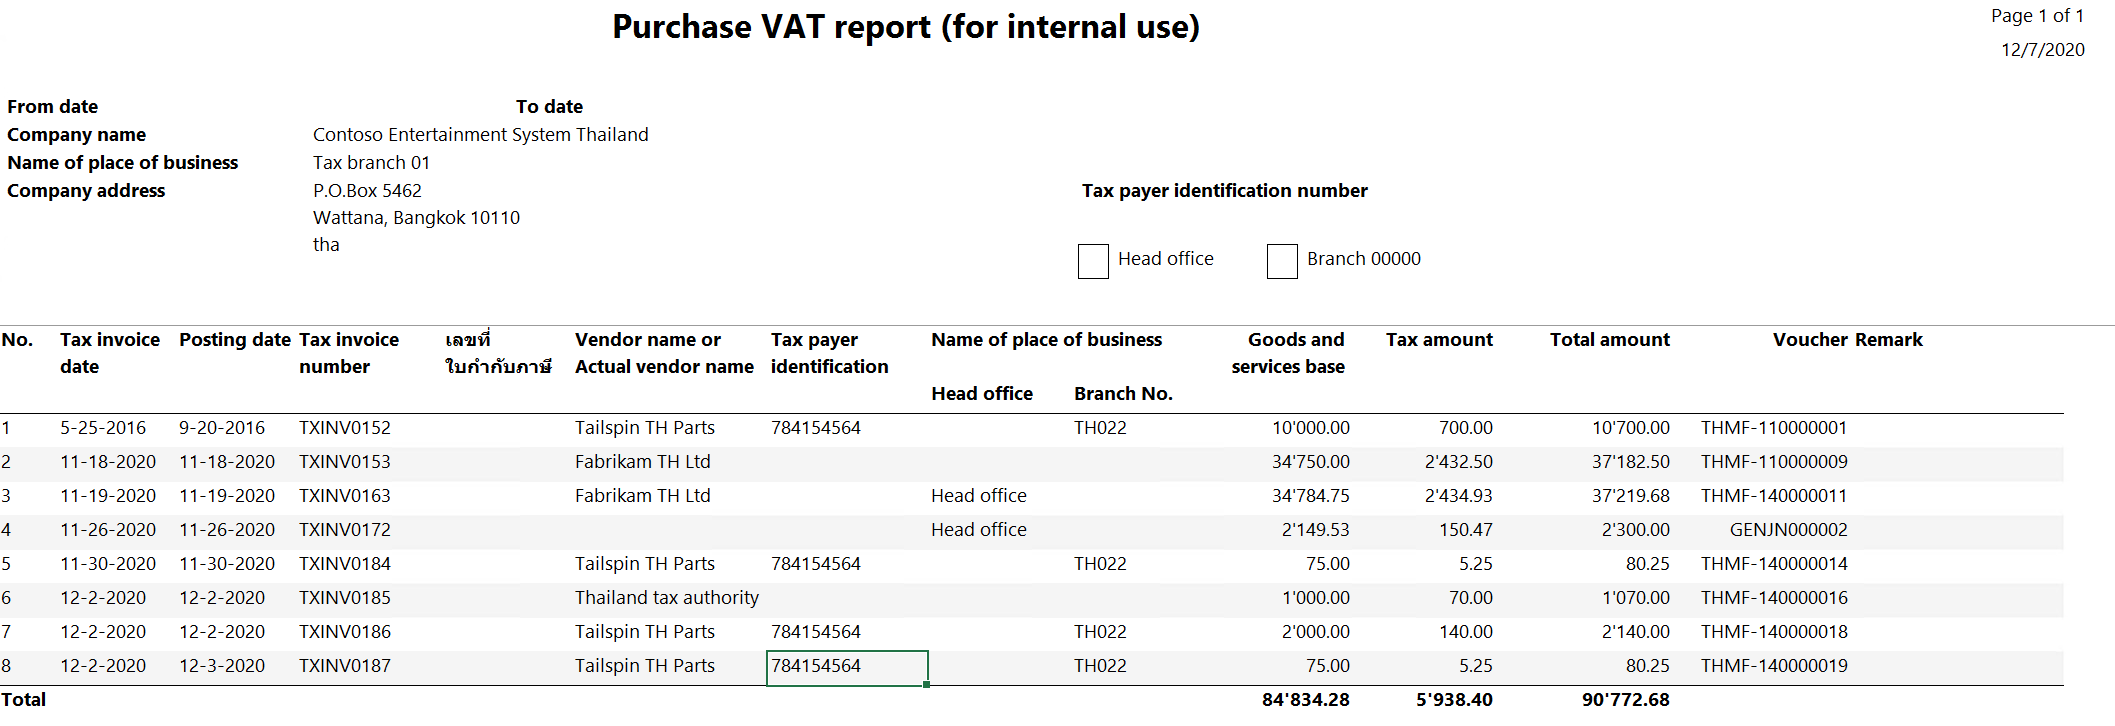 รายงาน VAT ซื้อ (สำหรับใช้ภายใน)